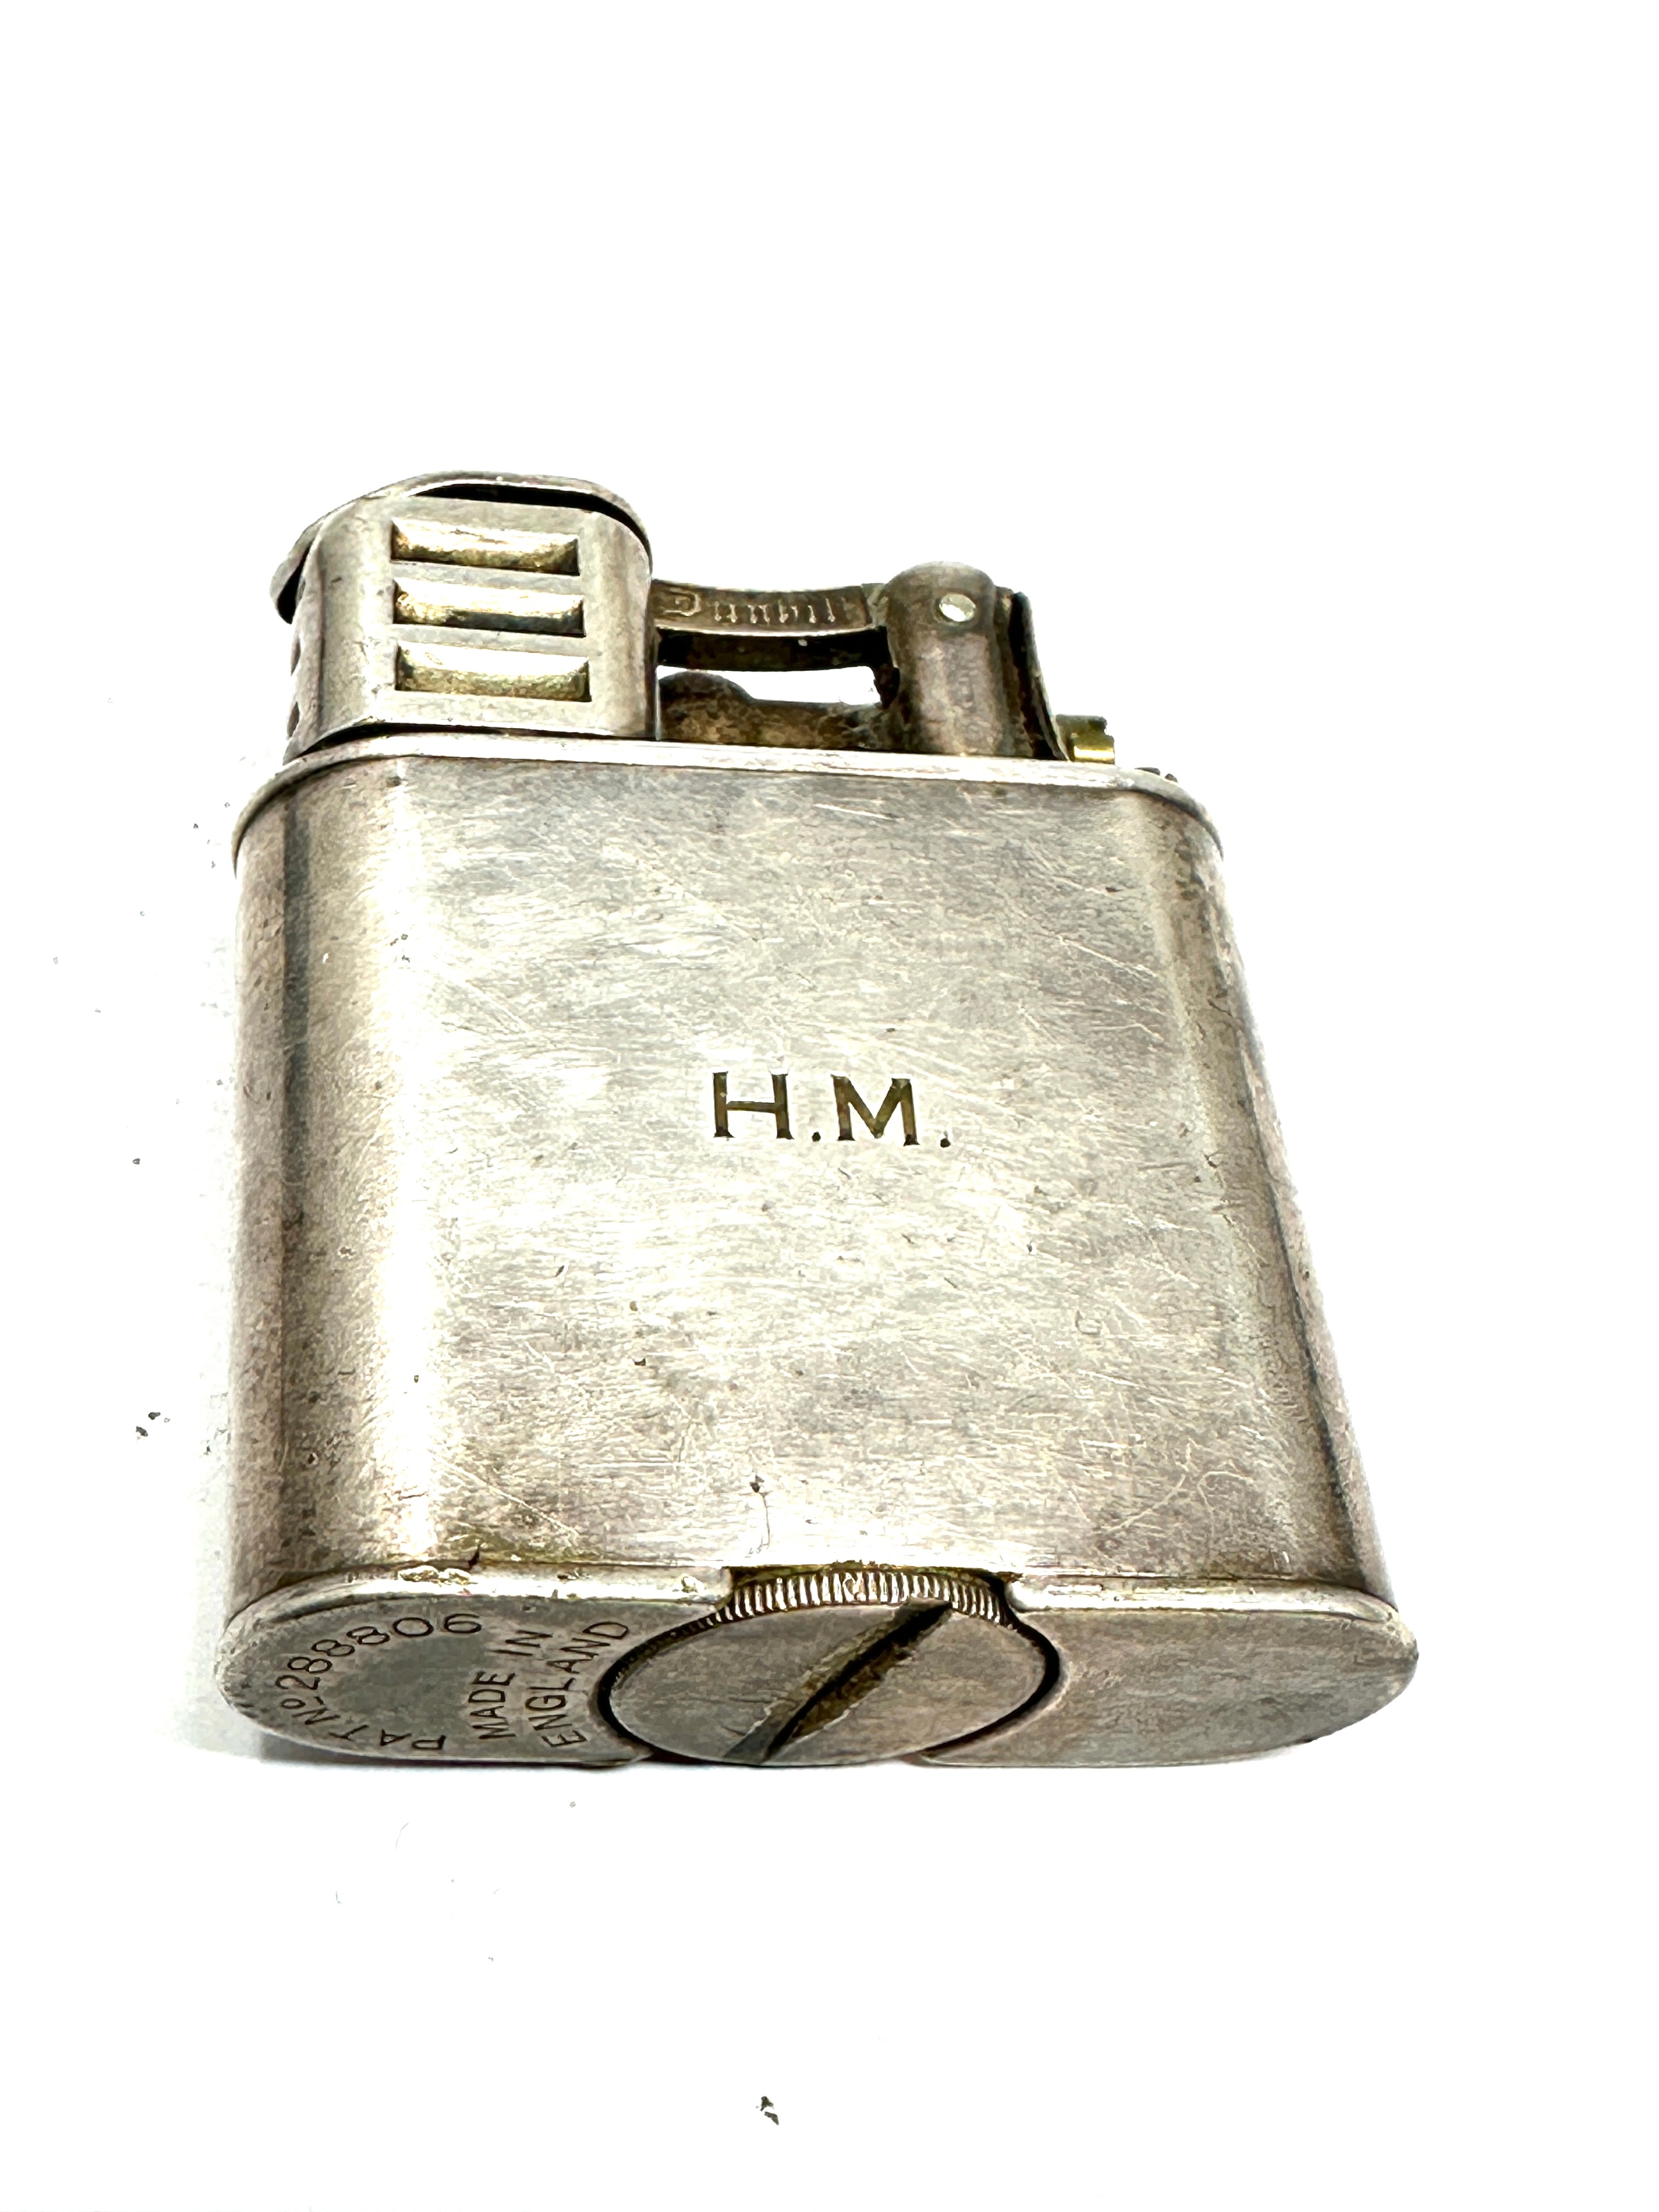 Vintage lift arm dunhill cigarette lighter - Image 2 of 4